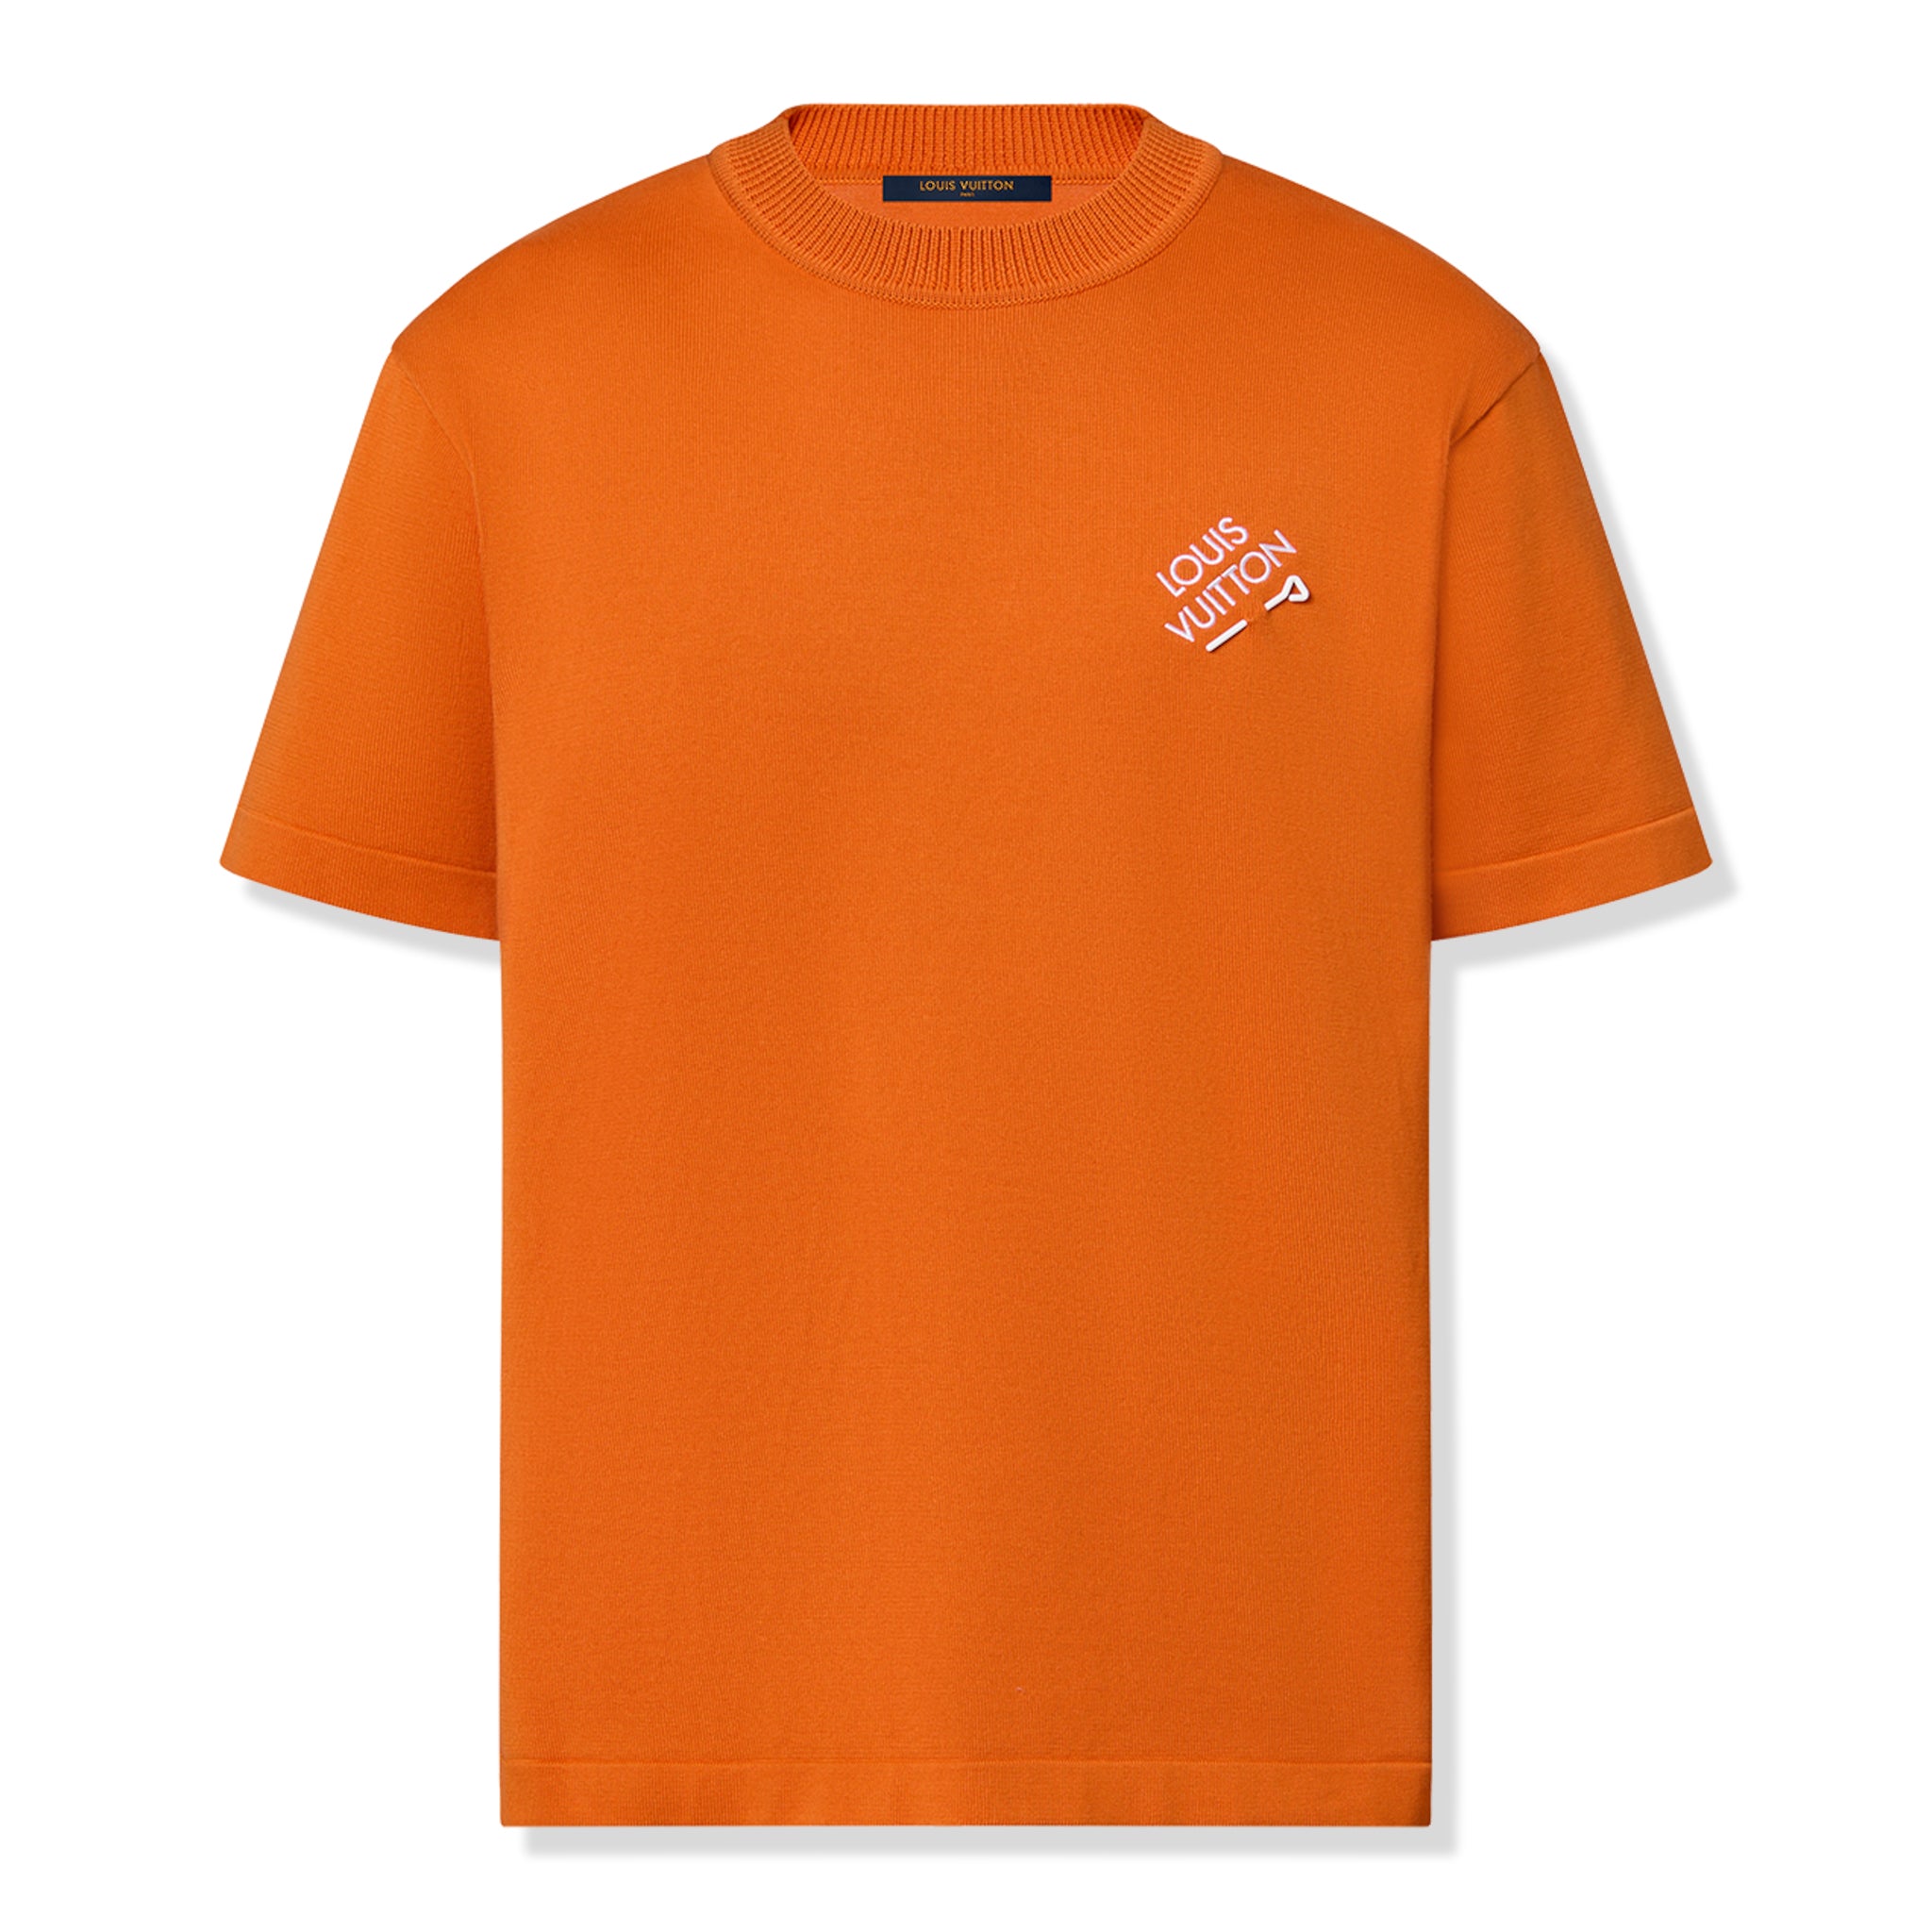 louis vuitton shirt orange